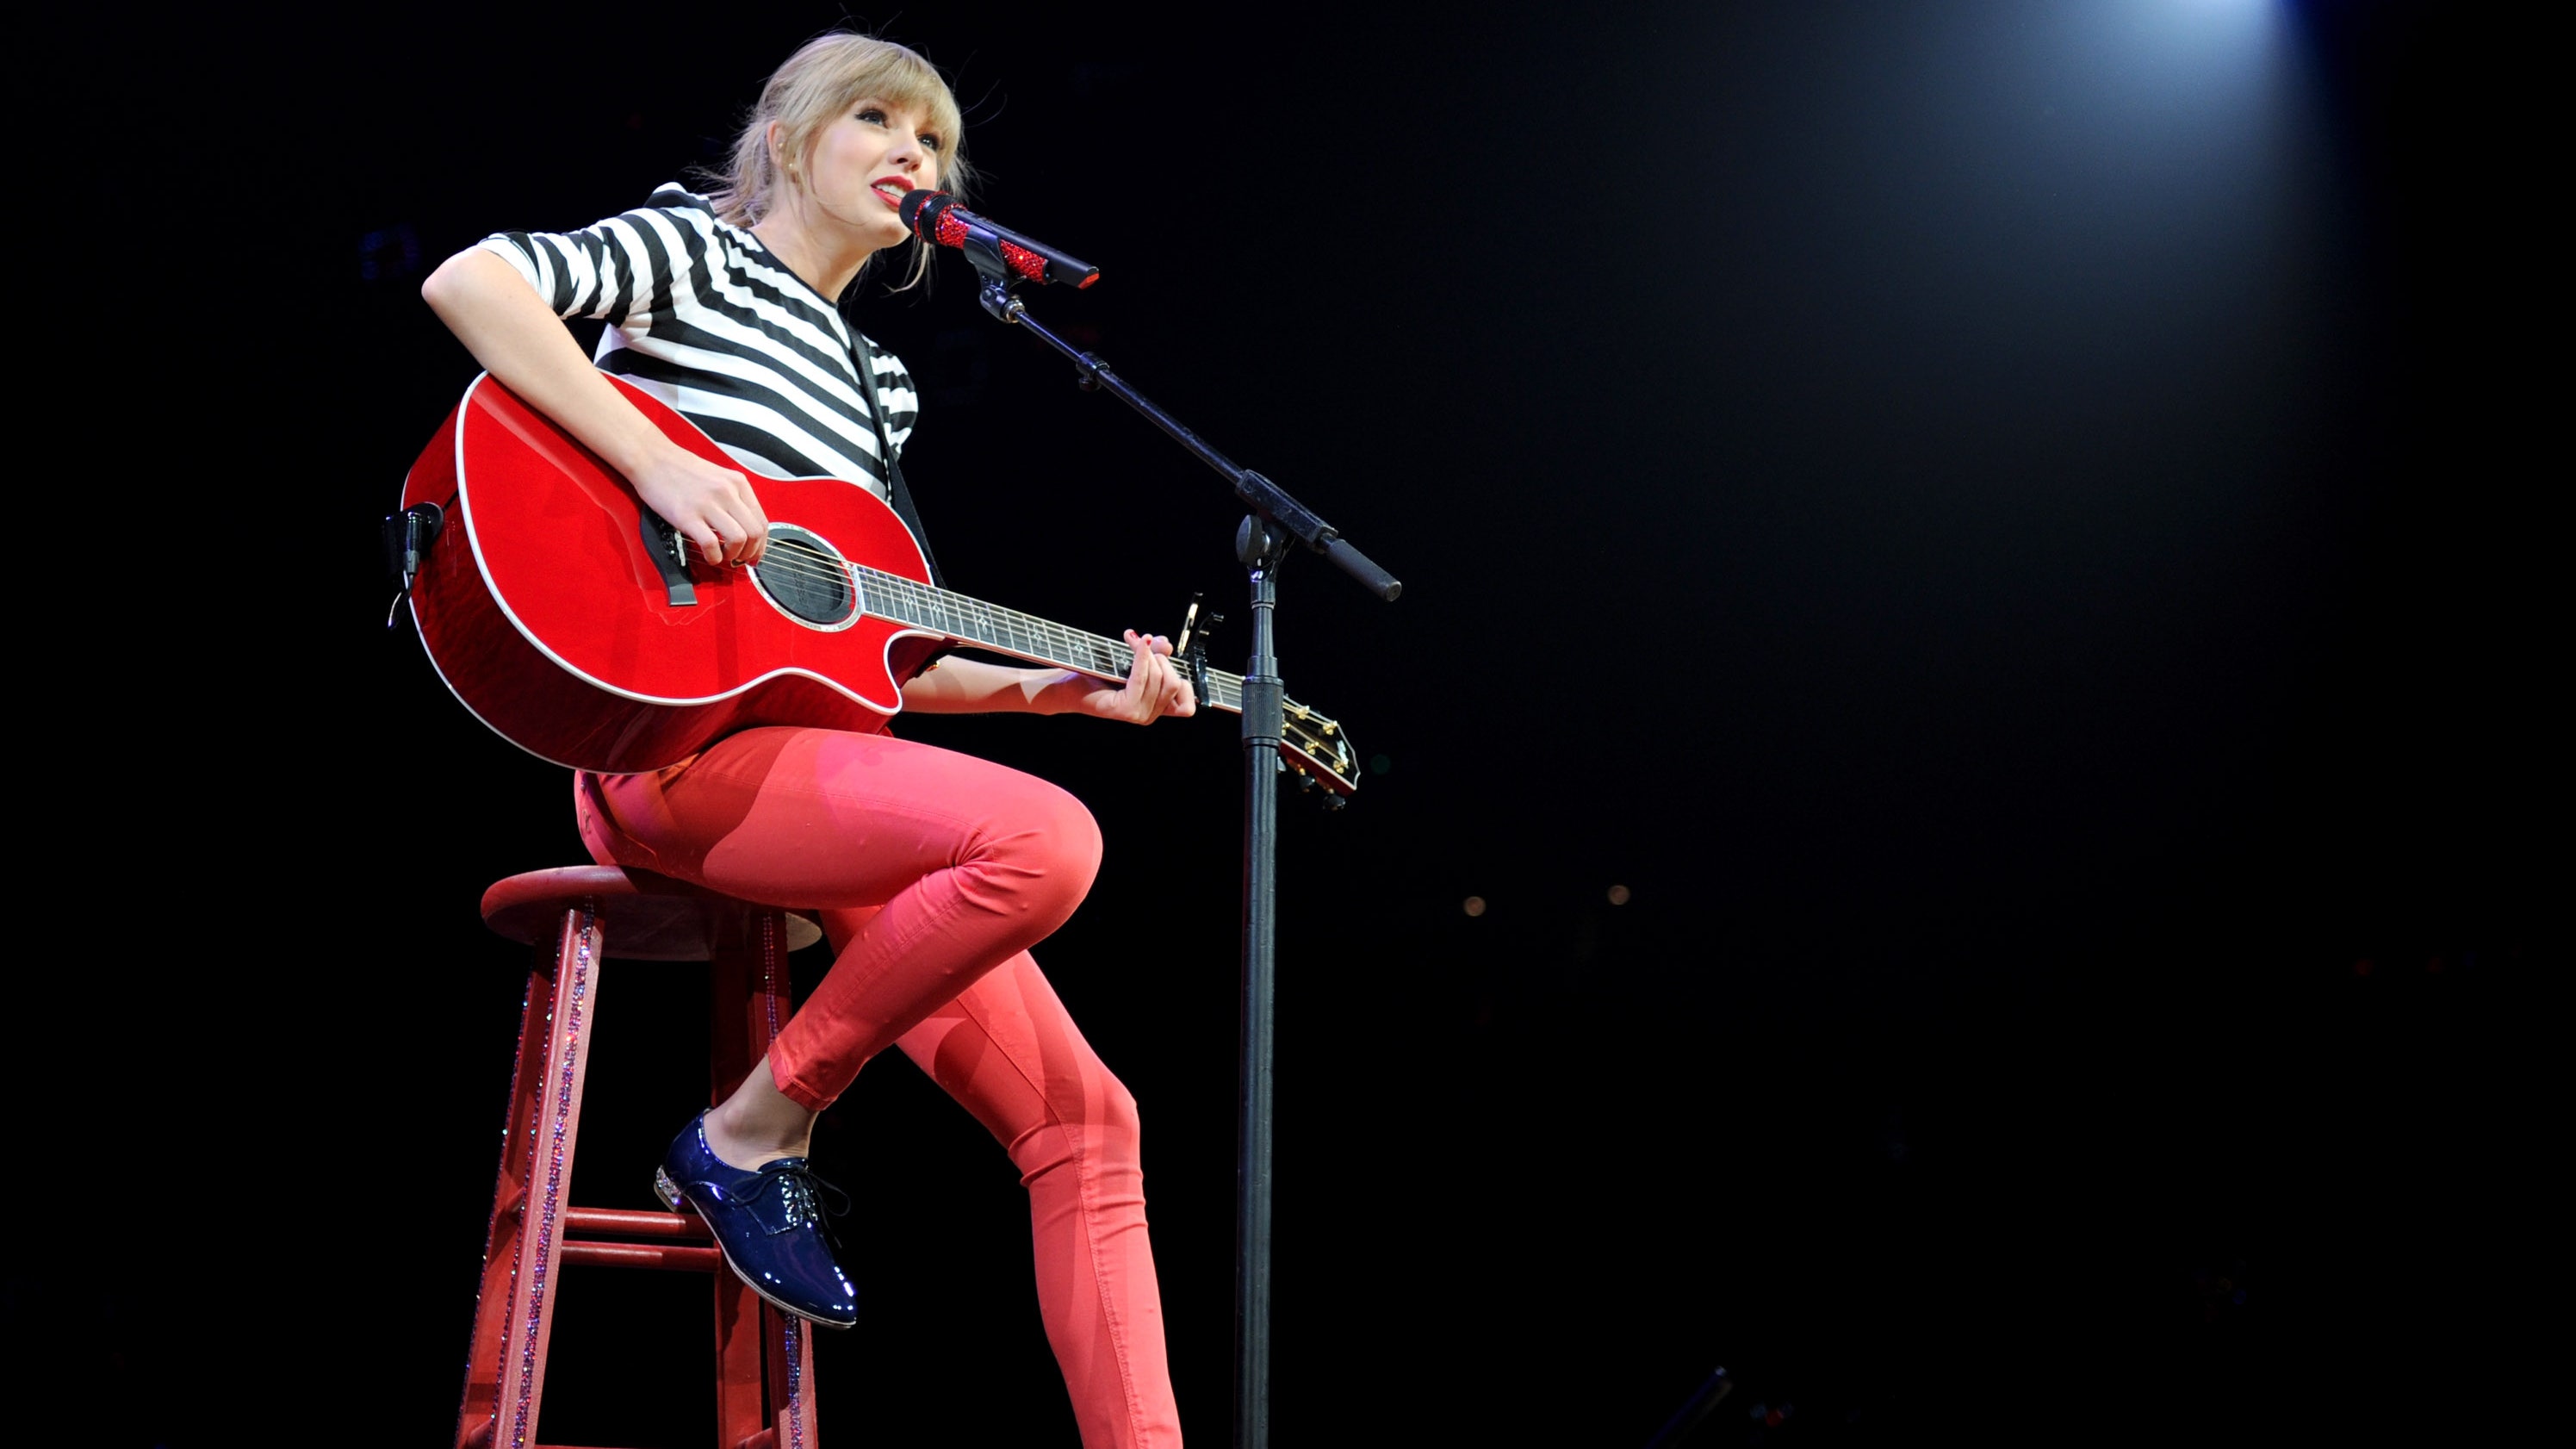 Taylor Swift Announces Next Album: “Red (Taylor's Version)”